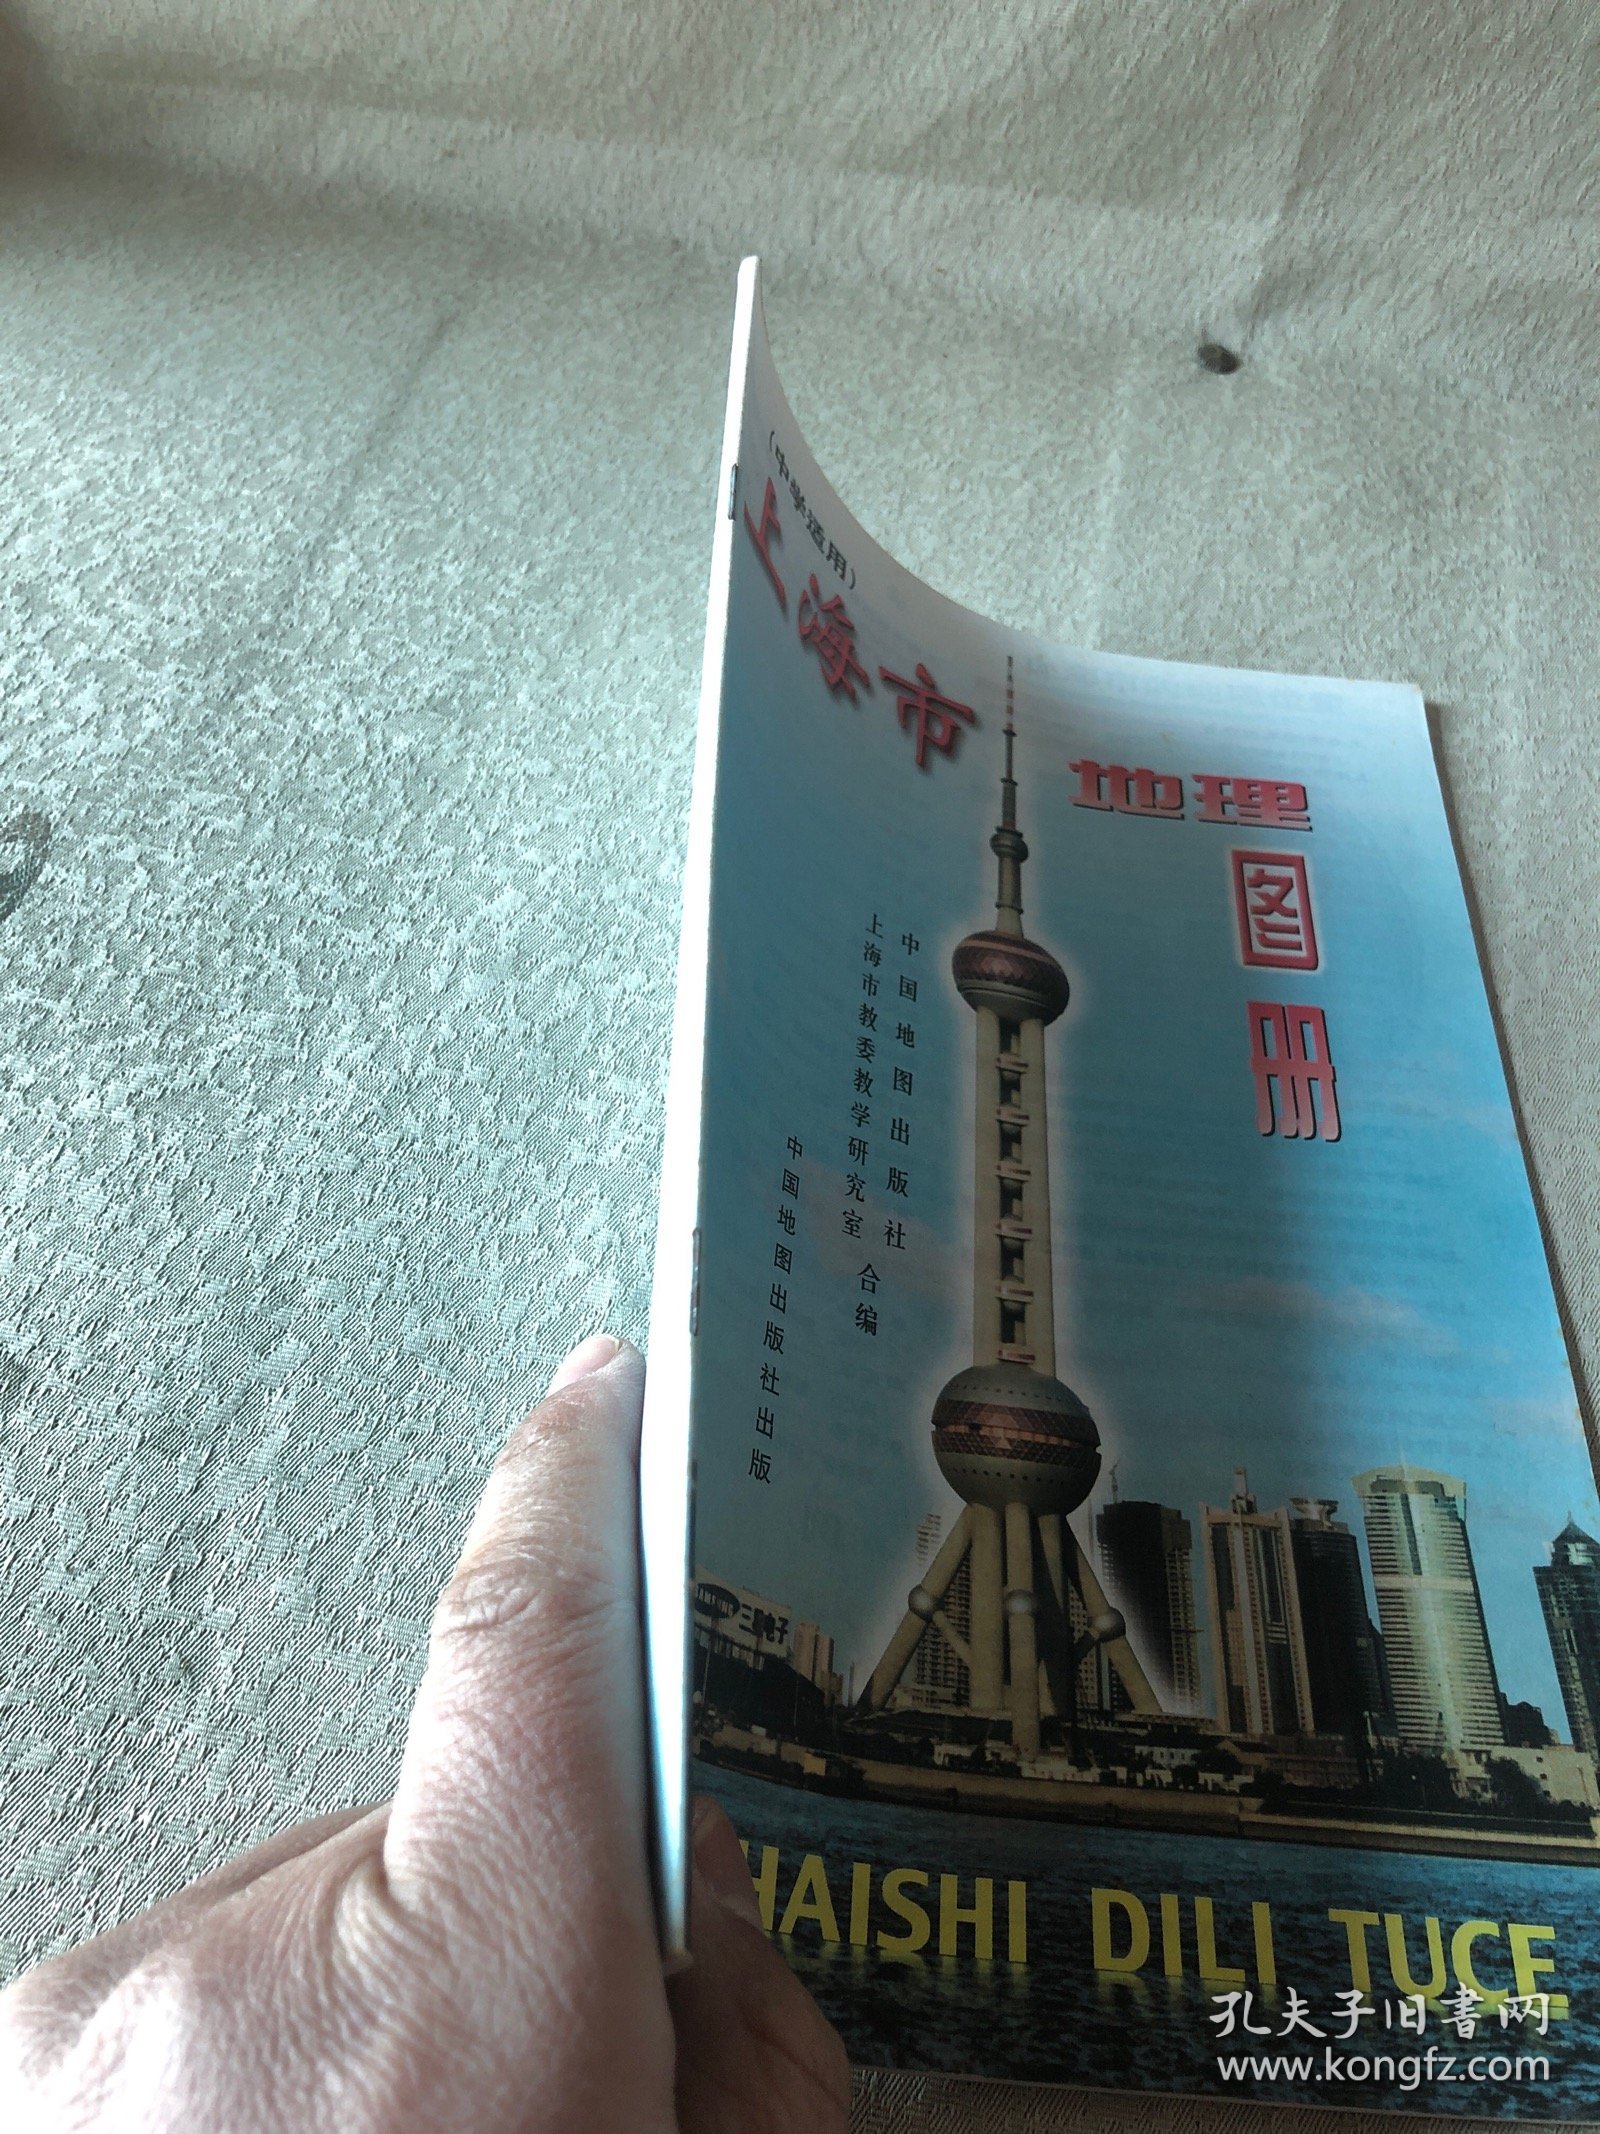 90年代老课本教辅 上海市地理图册 中学适用 第2版 少见版本